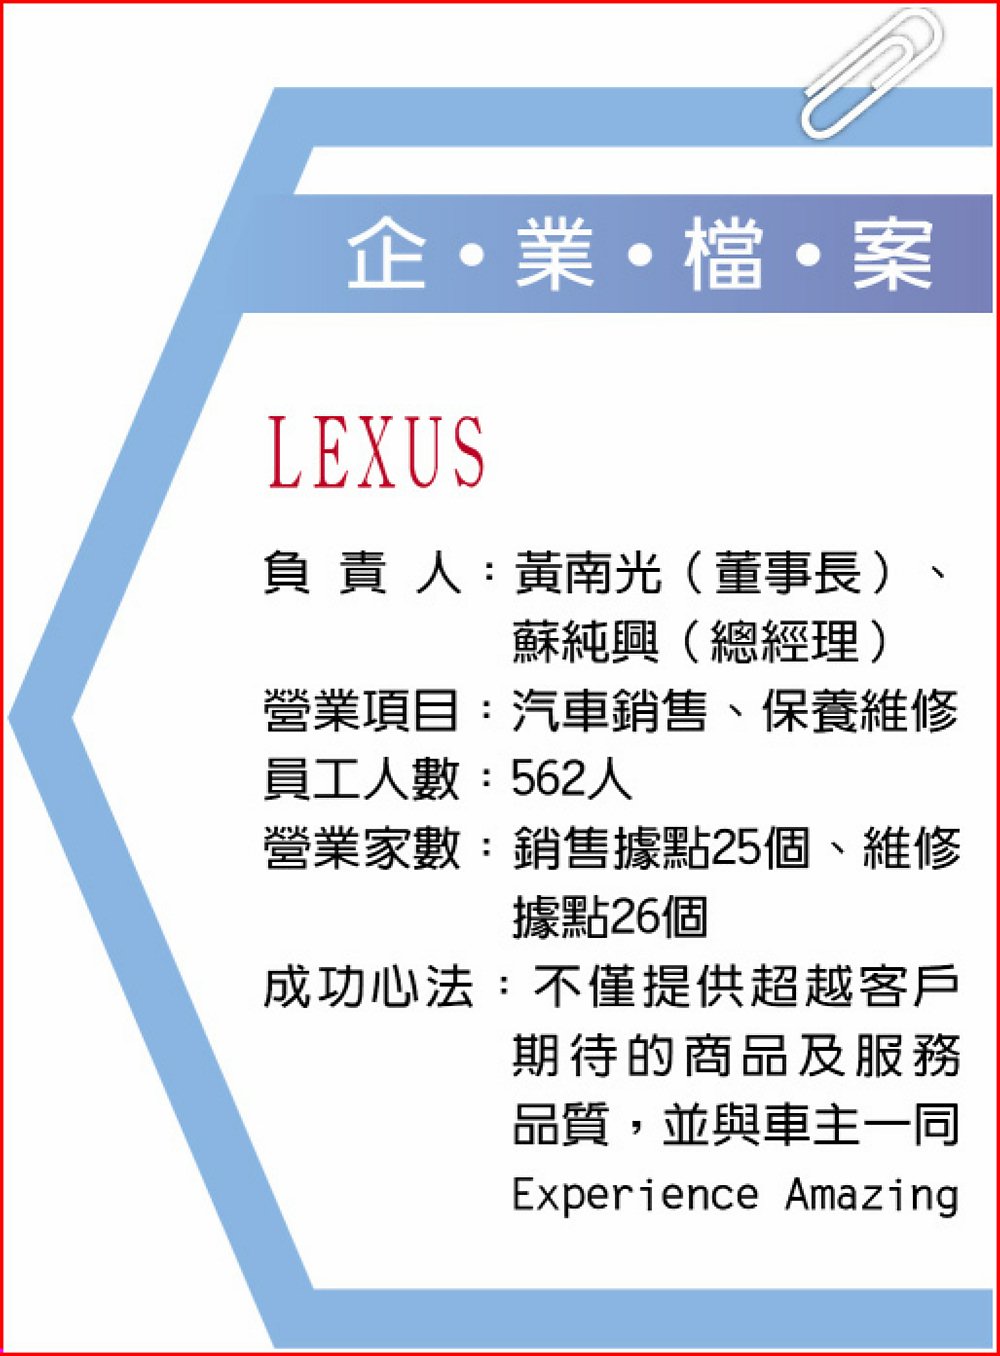 企業檔案
LEXUS